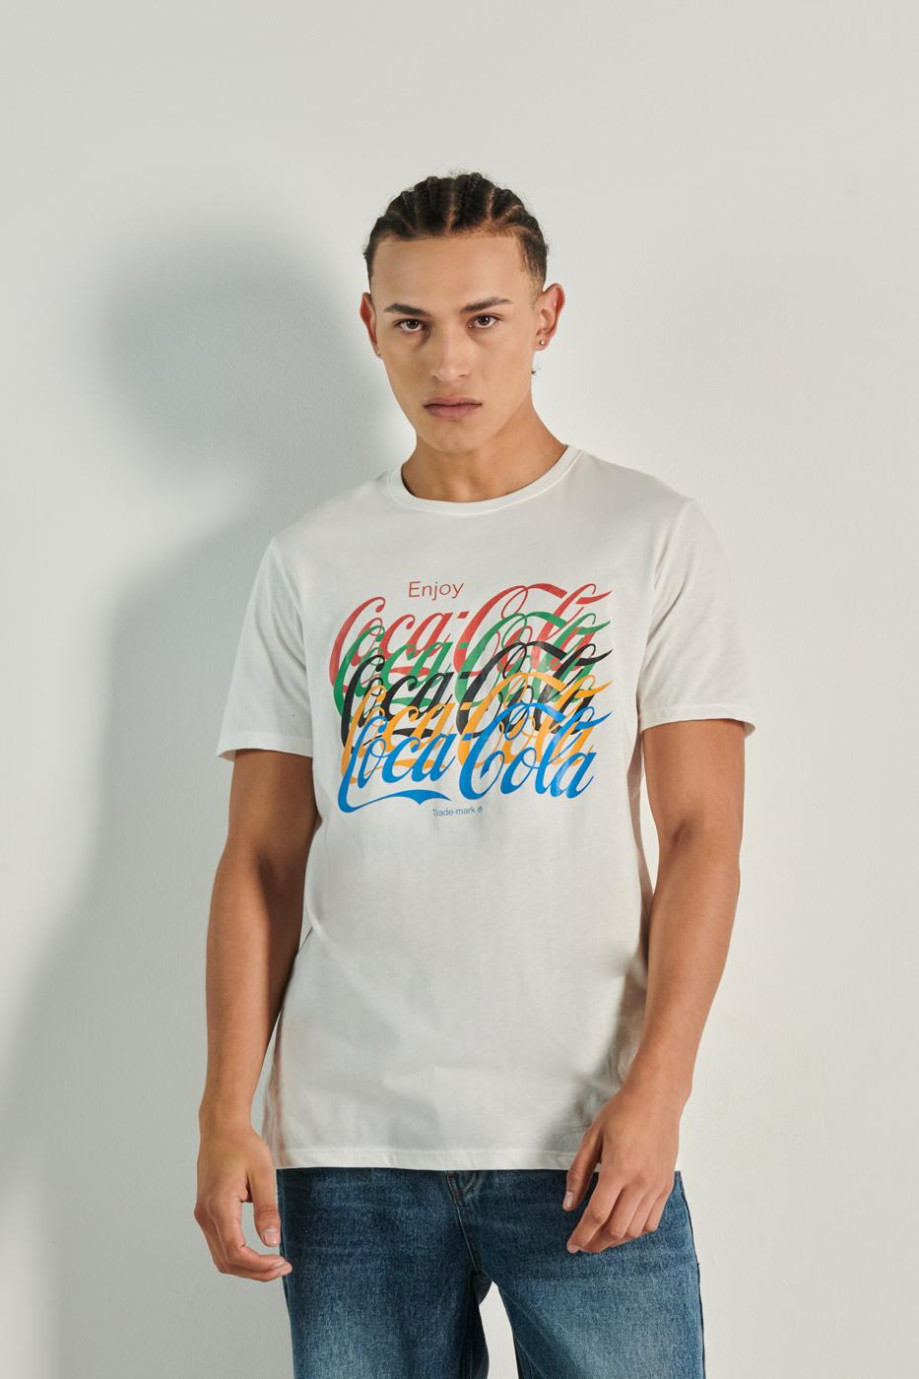 Camiseta unicolor con manga corta y diseño de Coca-Cola